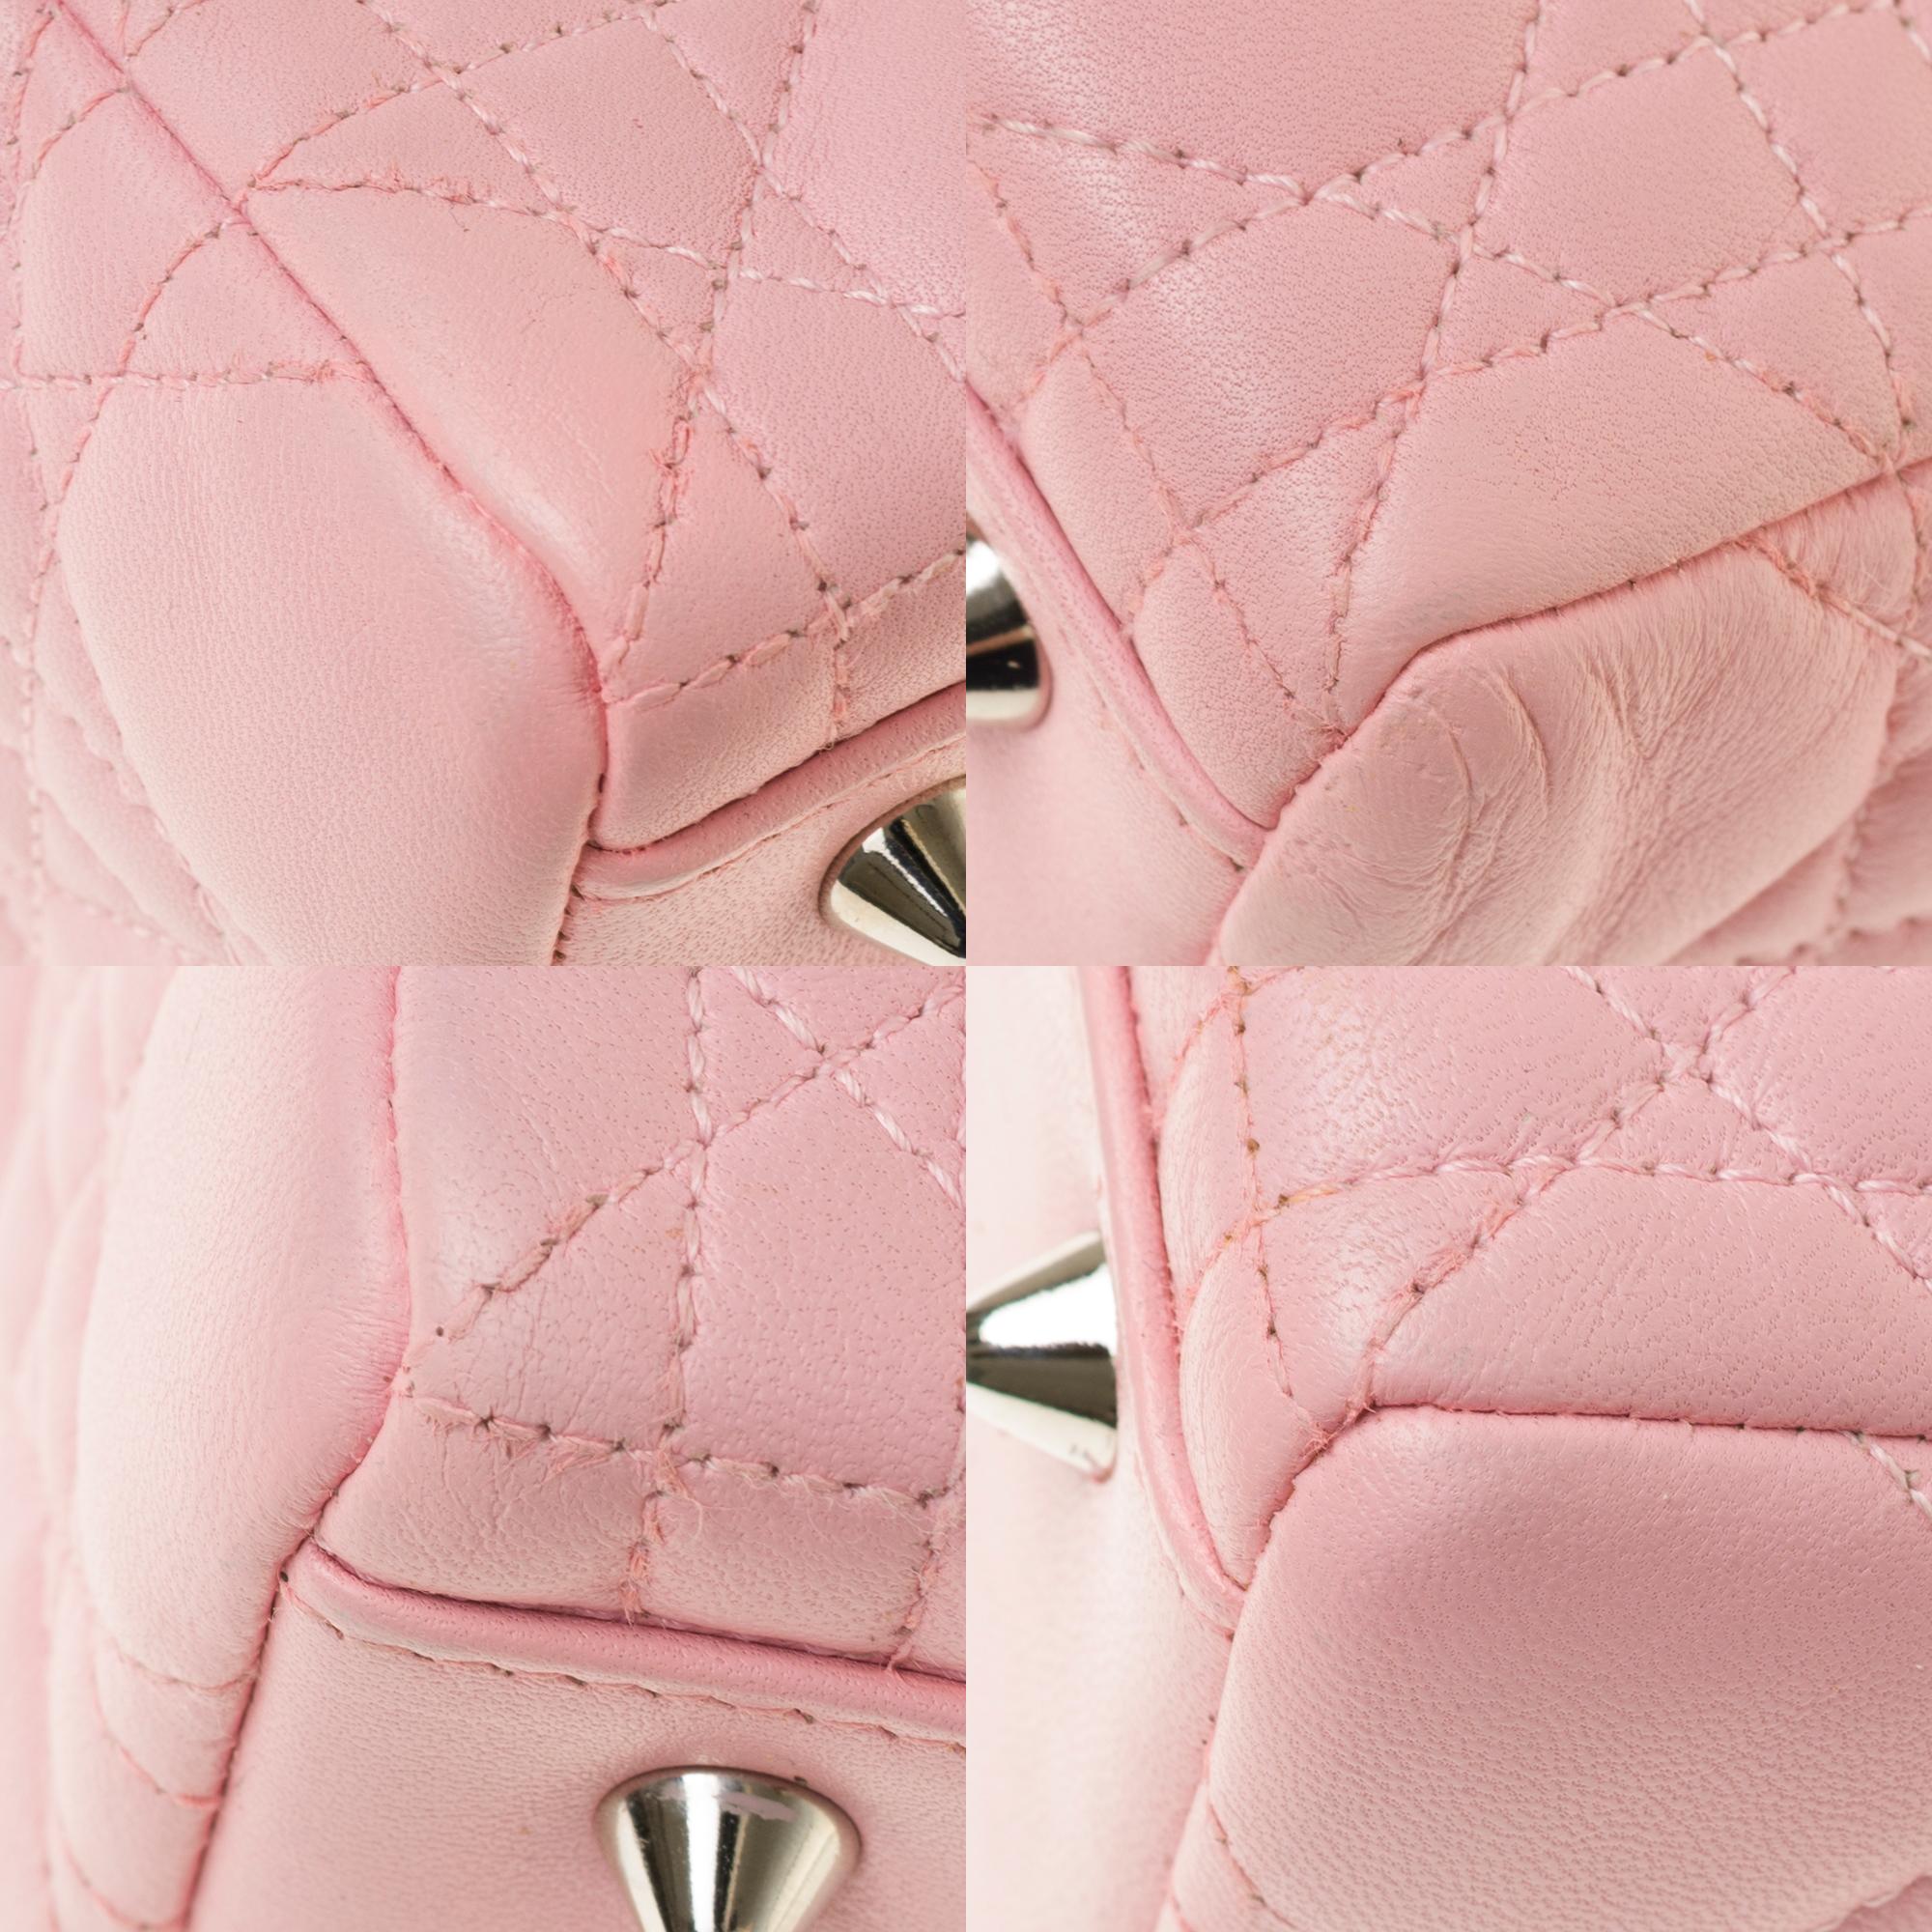  Christian Dior Lady Dior Medium size handbag in Pink cannage leather, SHW 4